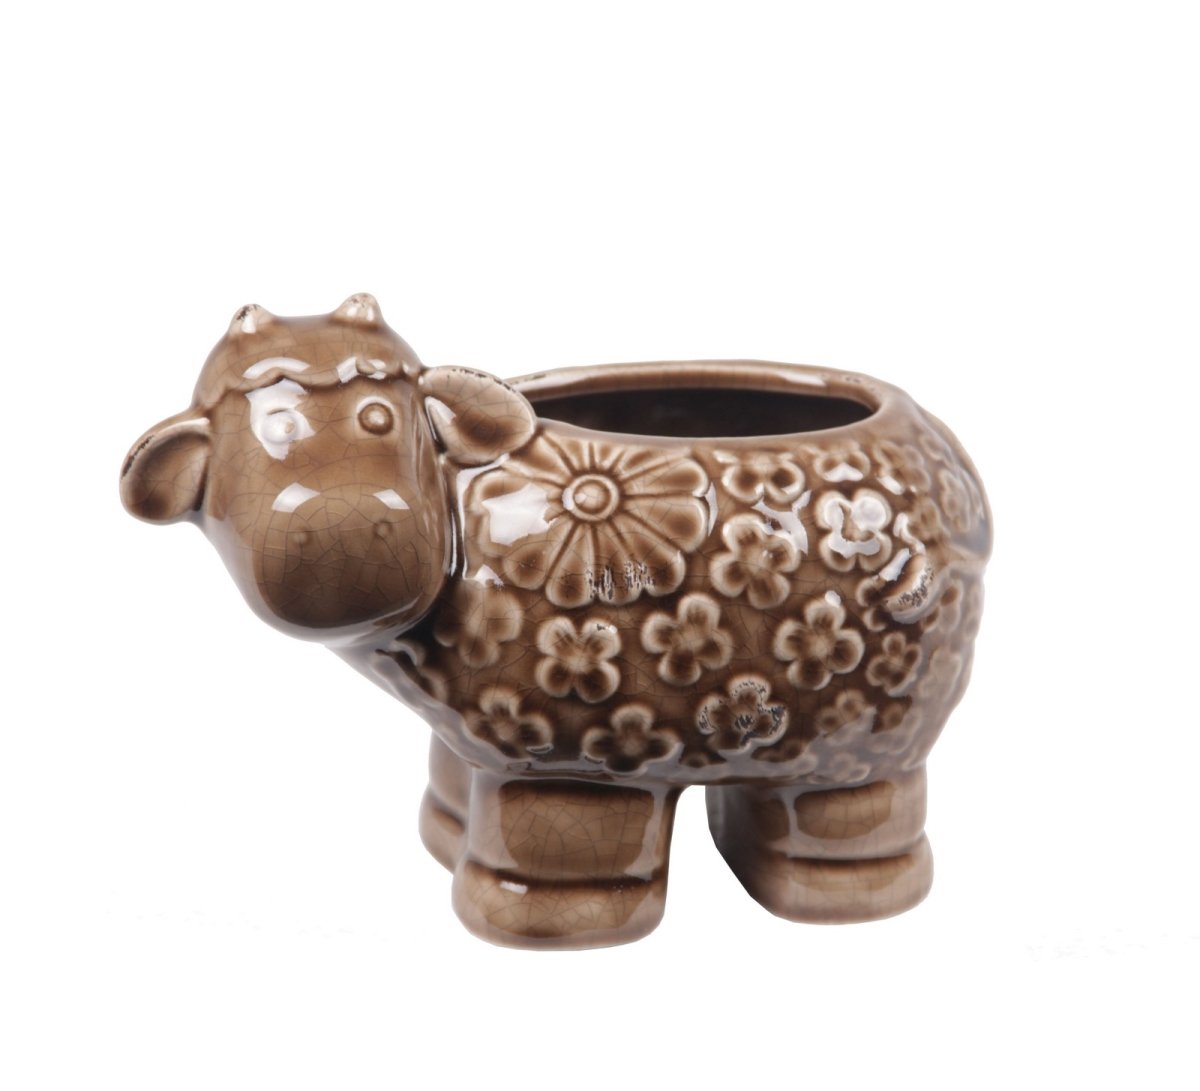 84028 9 X 5.5 X 6.5 In. Sheep Ceramic Vase